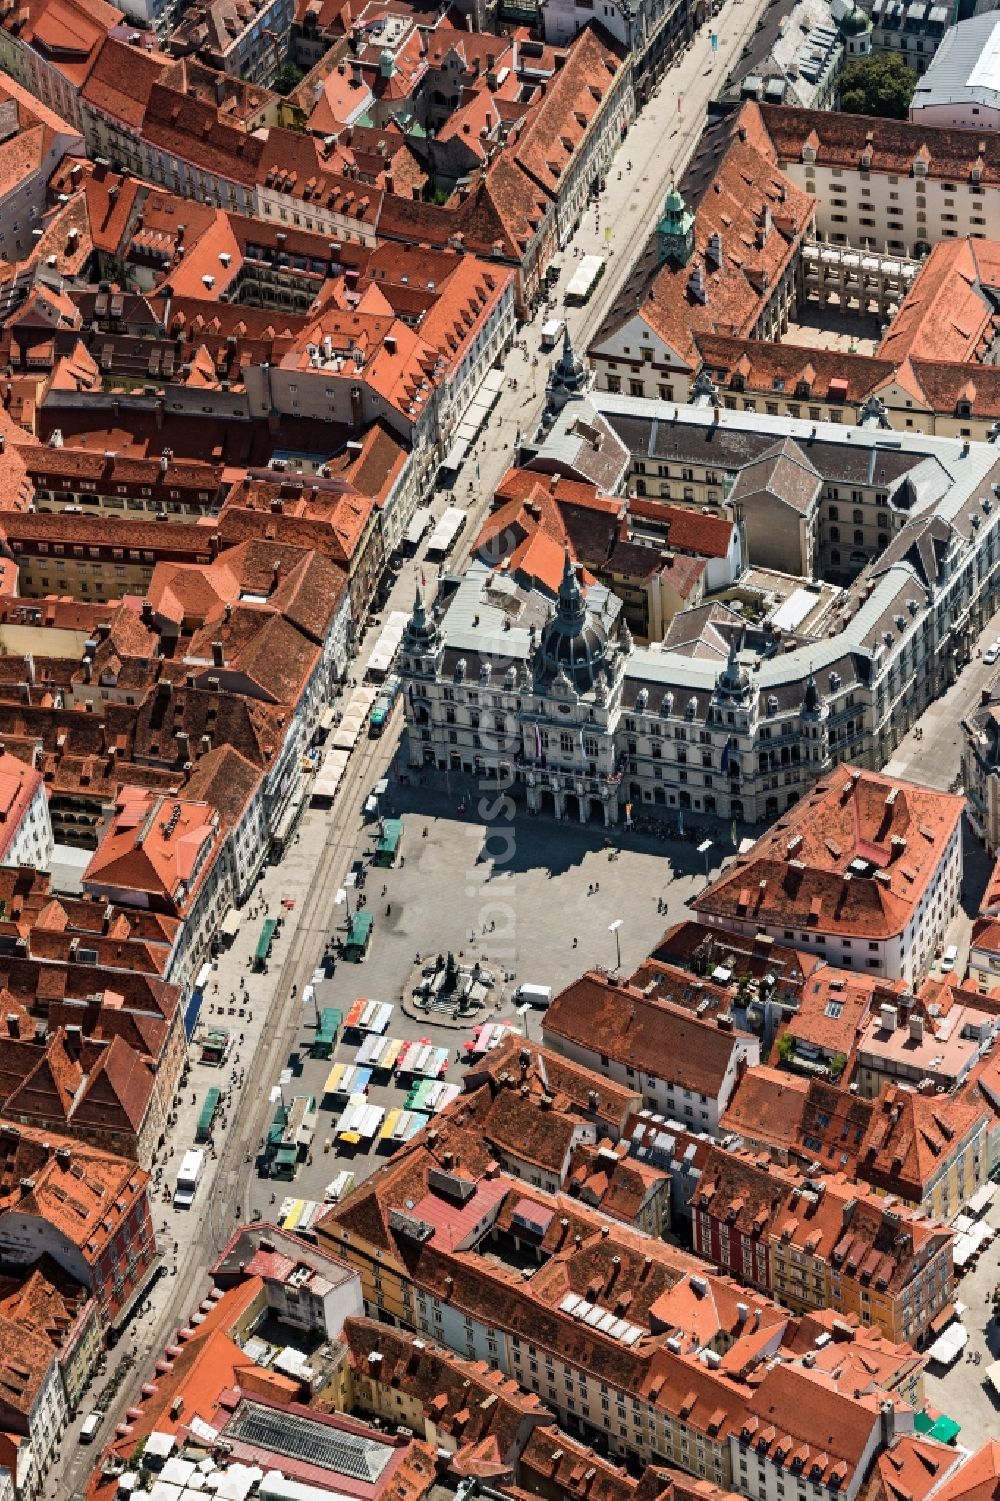 Graz von oben - Gebäude der Stadtverwaltung - Rathaus am Marktplatz in Graz in Steiermark, Österreich